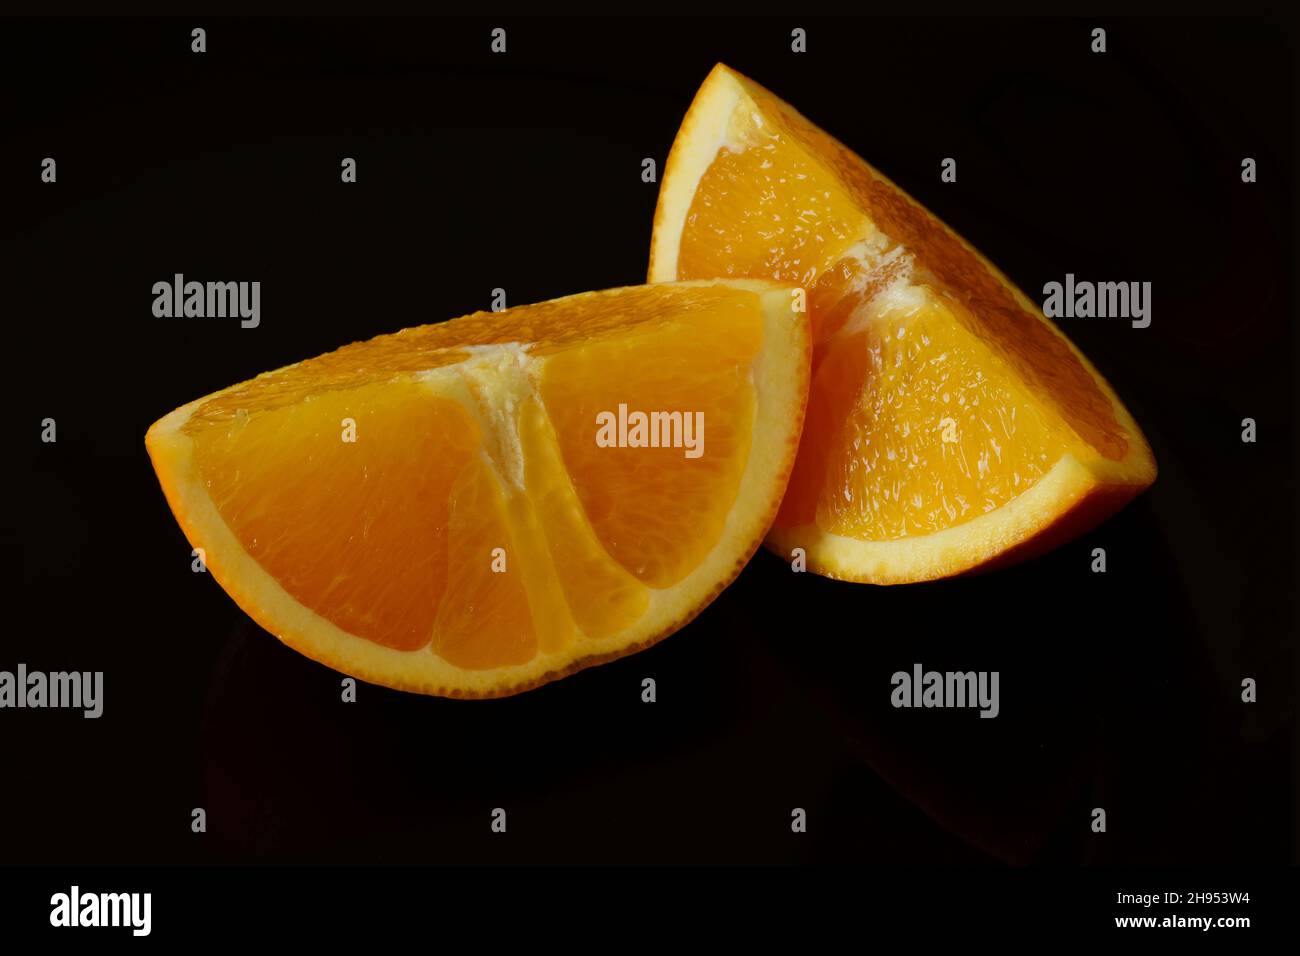 Isolierte Scheiben reifer orangefarbener Früchte in der Makroansicht. Schwarzer Hintergrund. Weiße und gelbe Orangenschale. Vitamin und gesundes Esskonzept. Stillleben Bild Stockfoto